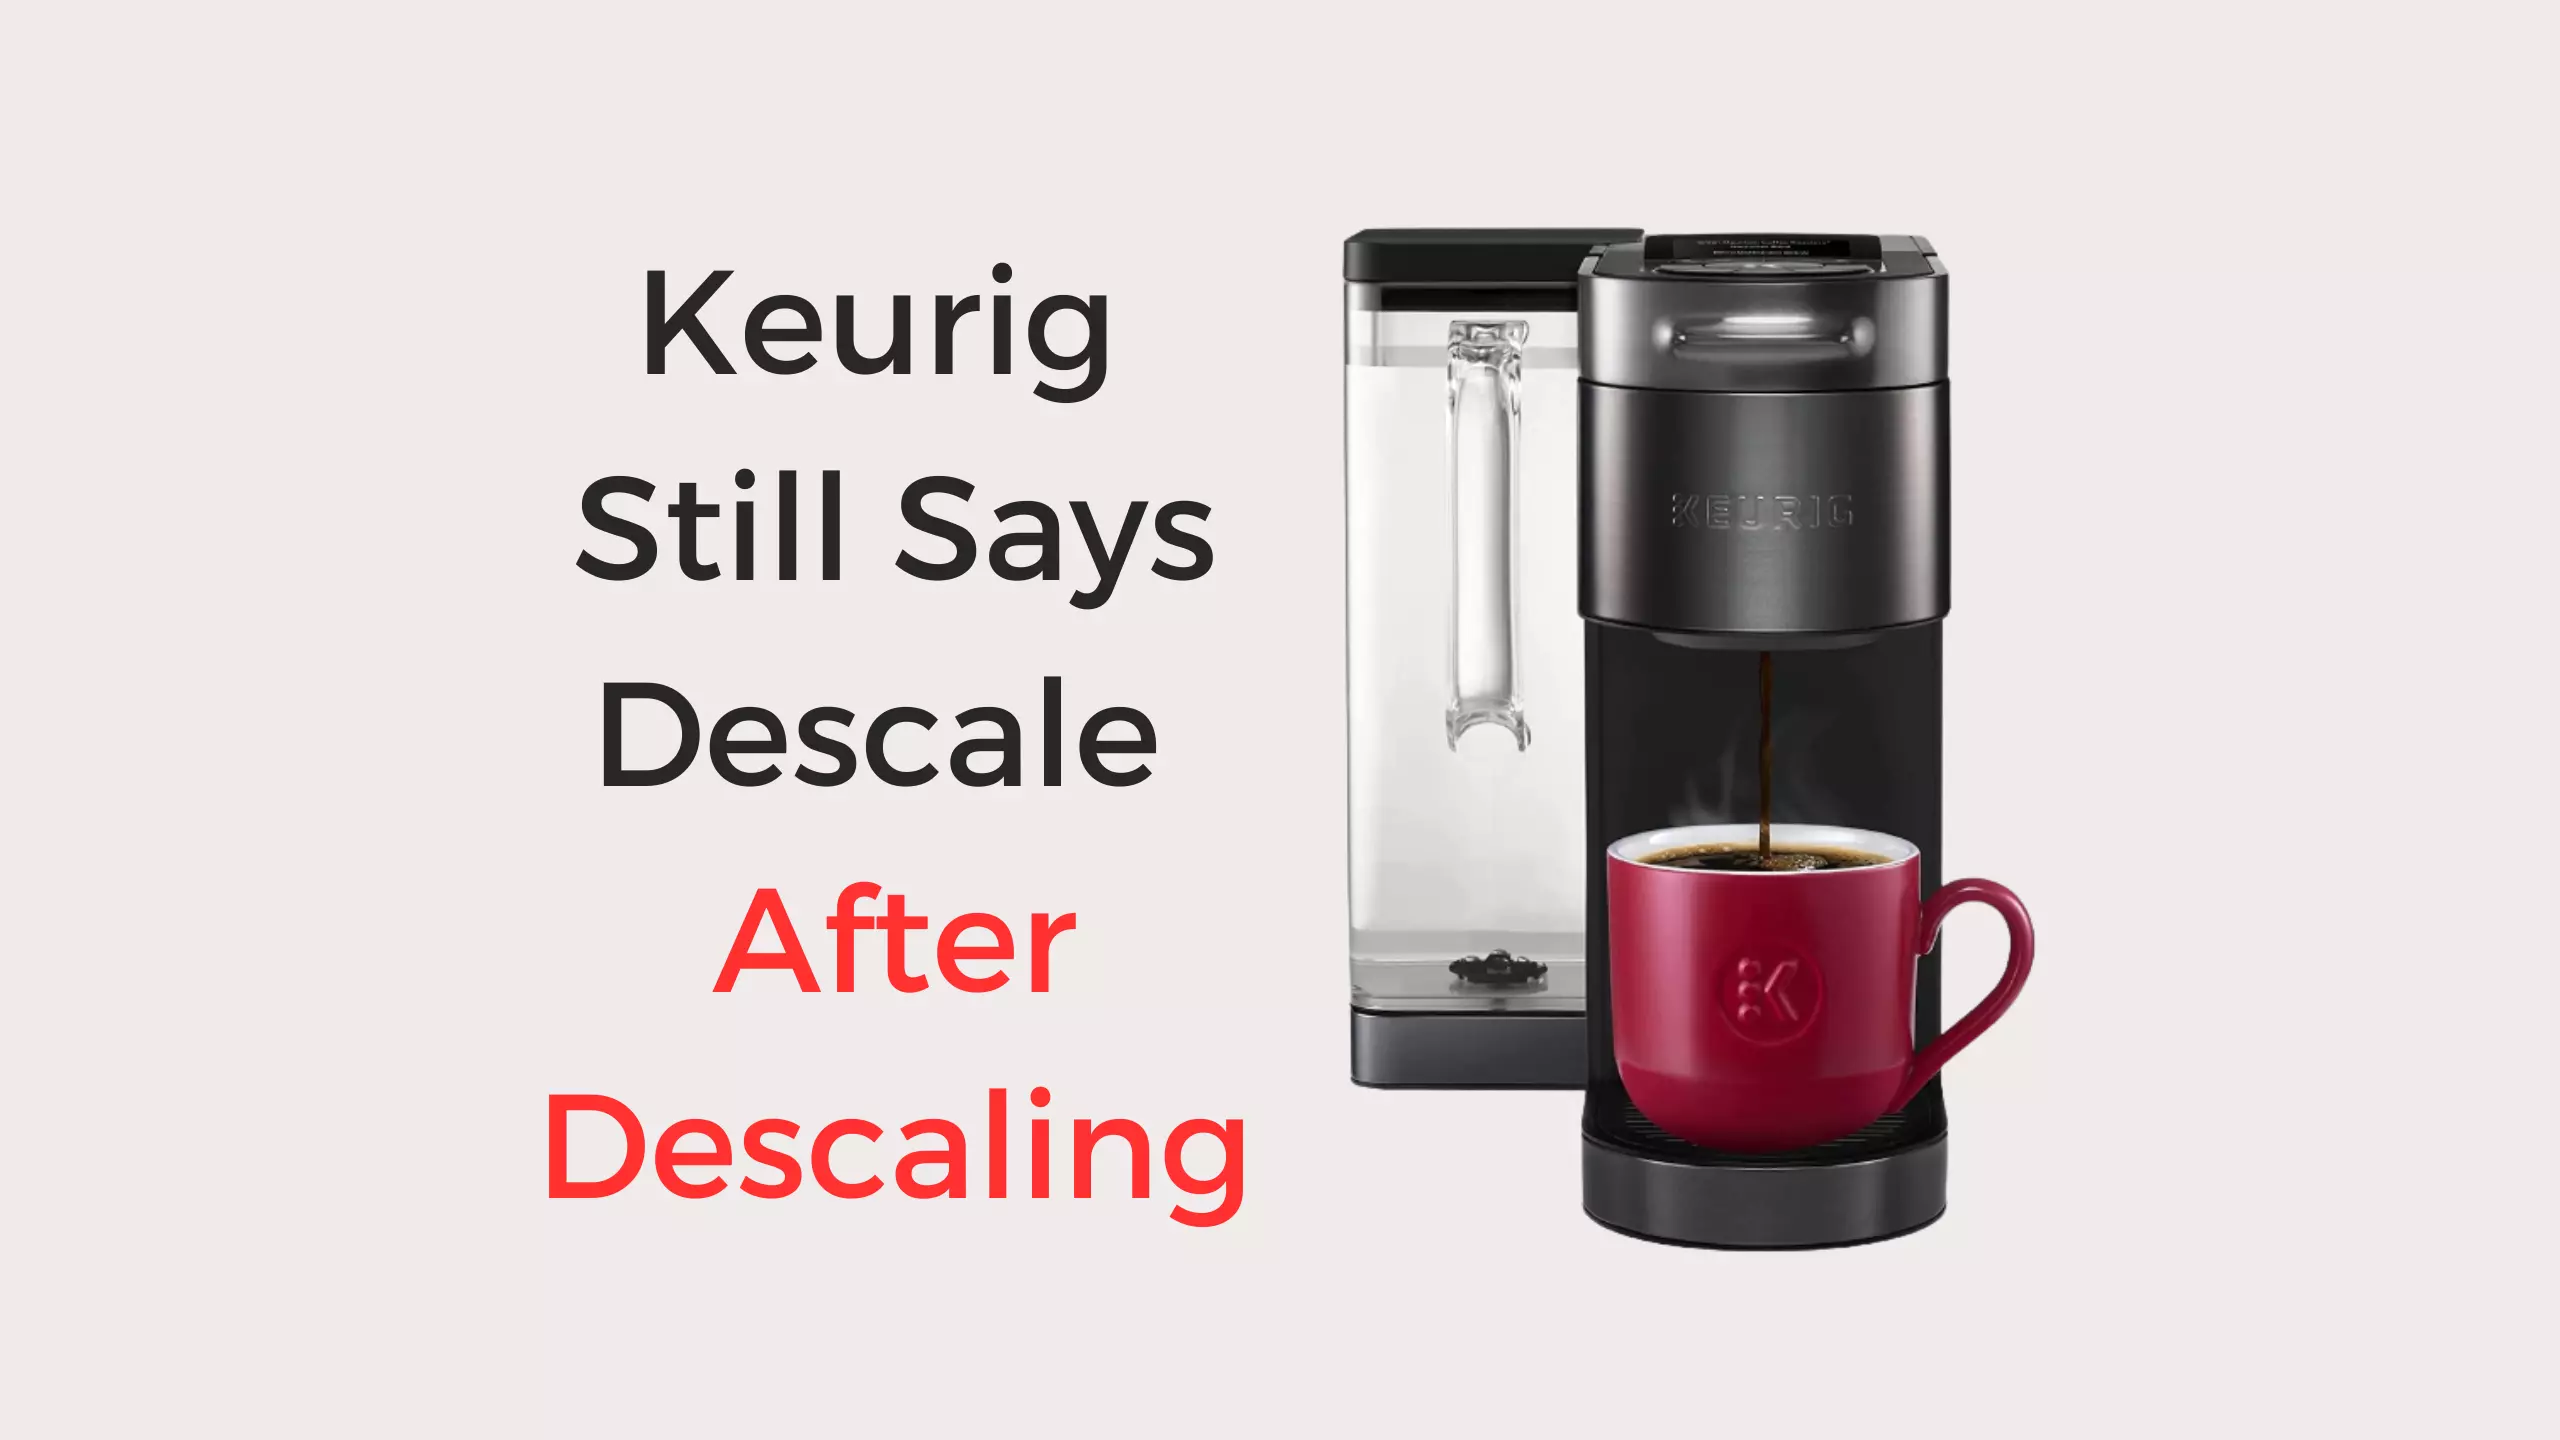 keurig still says descale after descaling